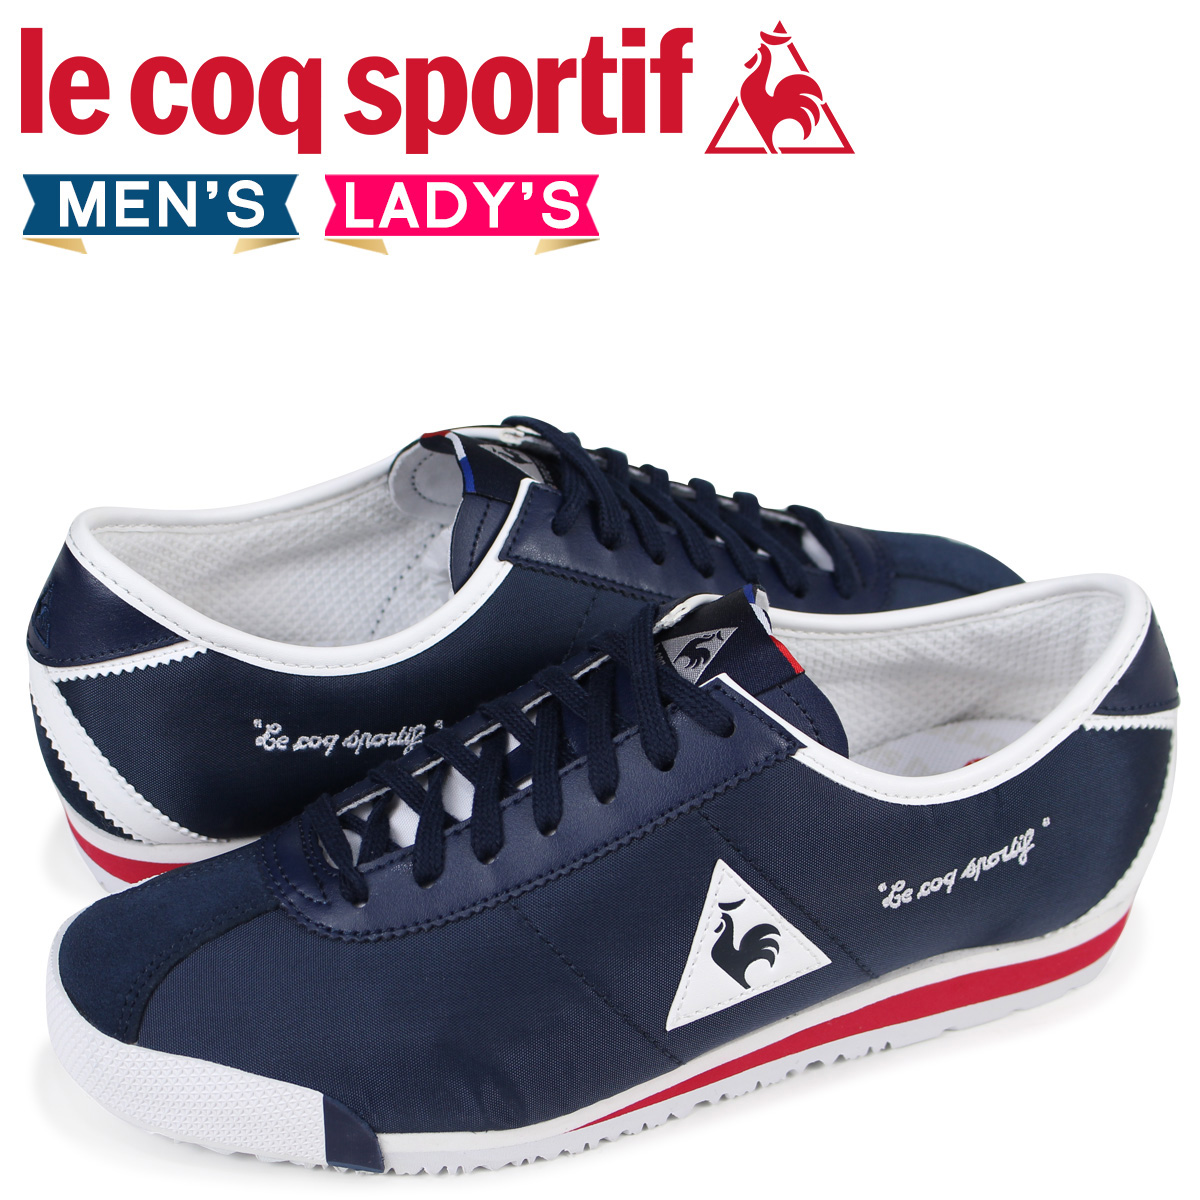 le coq sportif shoes blue